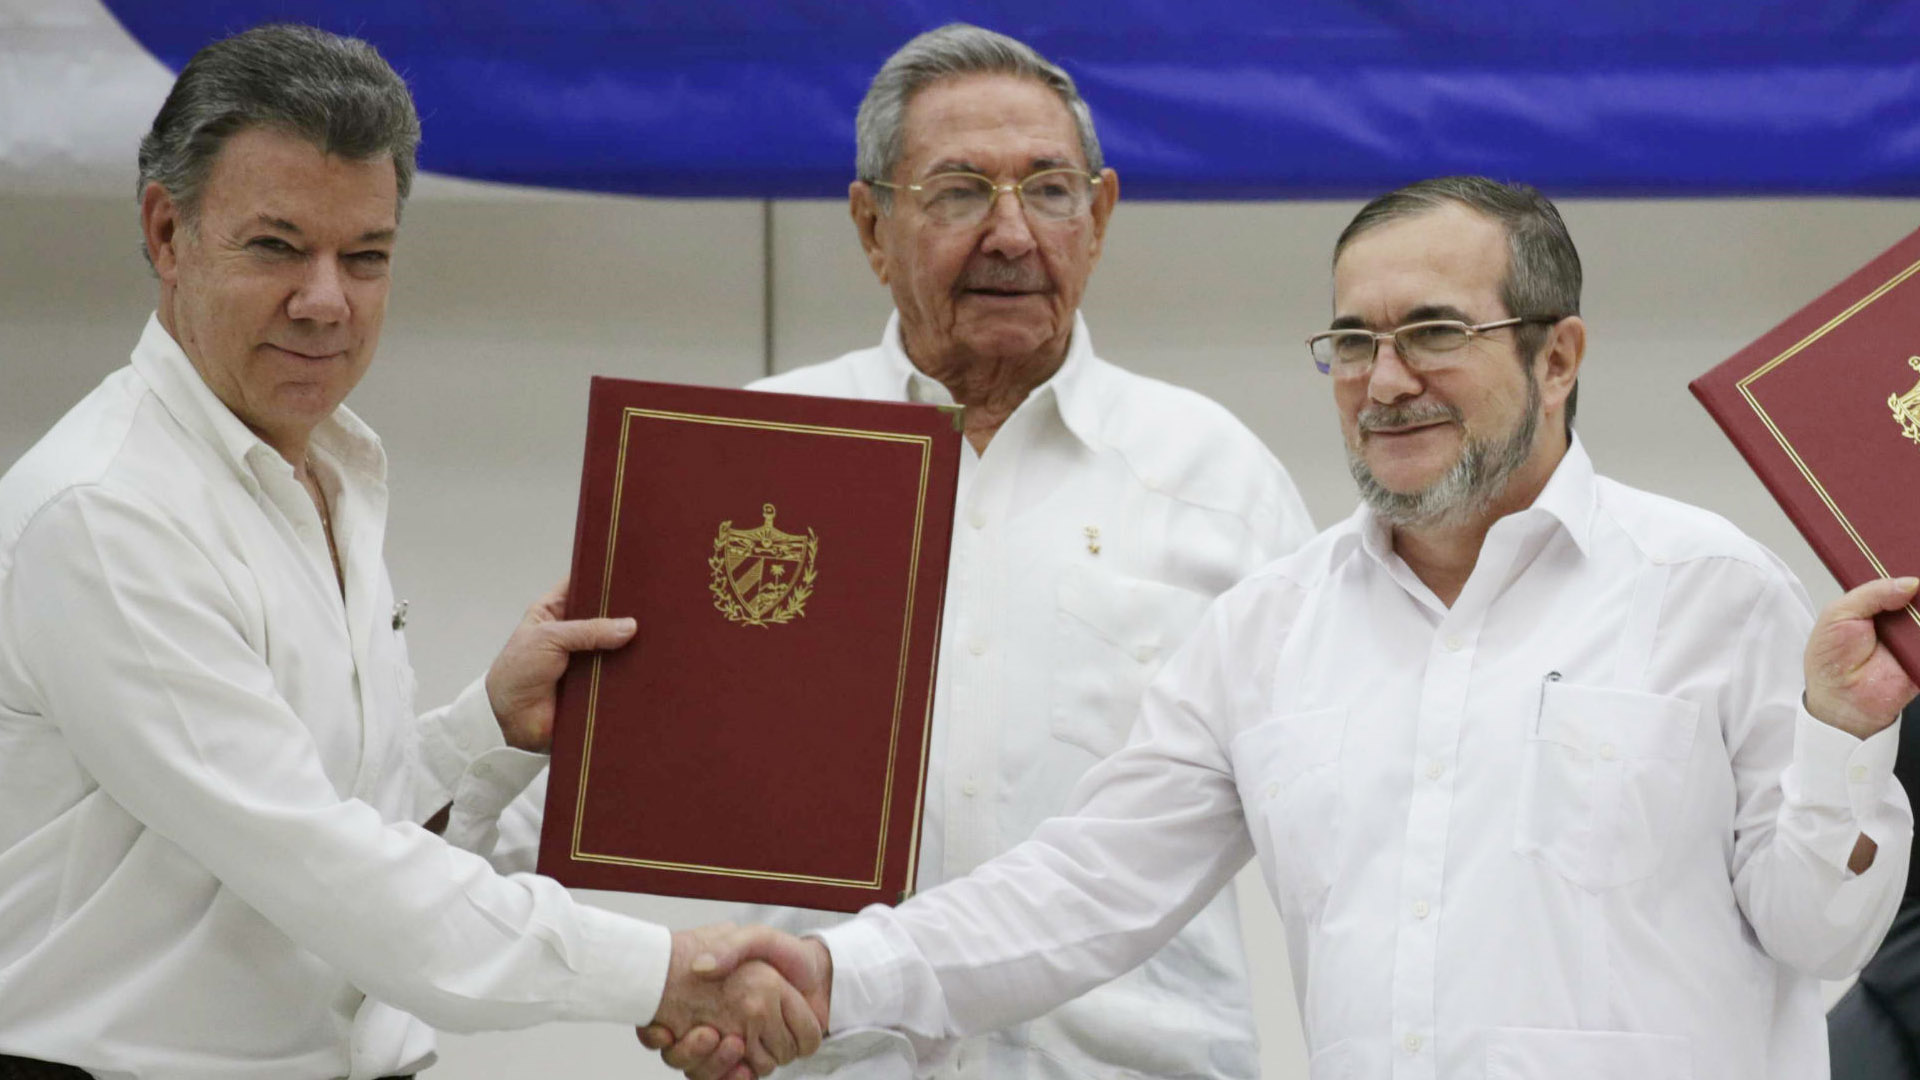 El presidente de Colombia, Juan Manuel Santos, aseguró que el acuerdo final se dará después de la reunión de la guerrilla